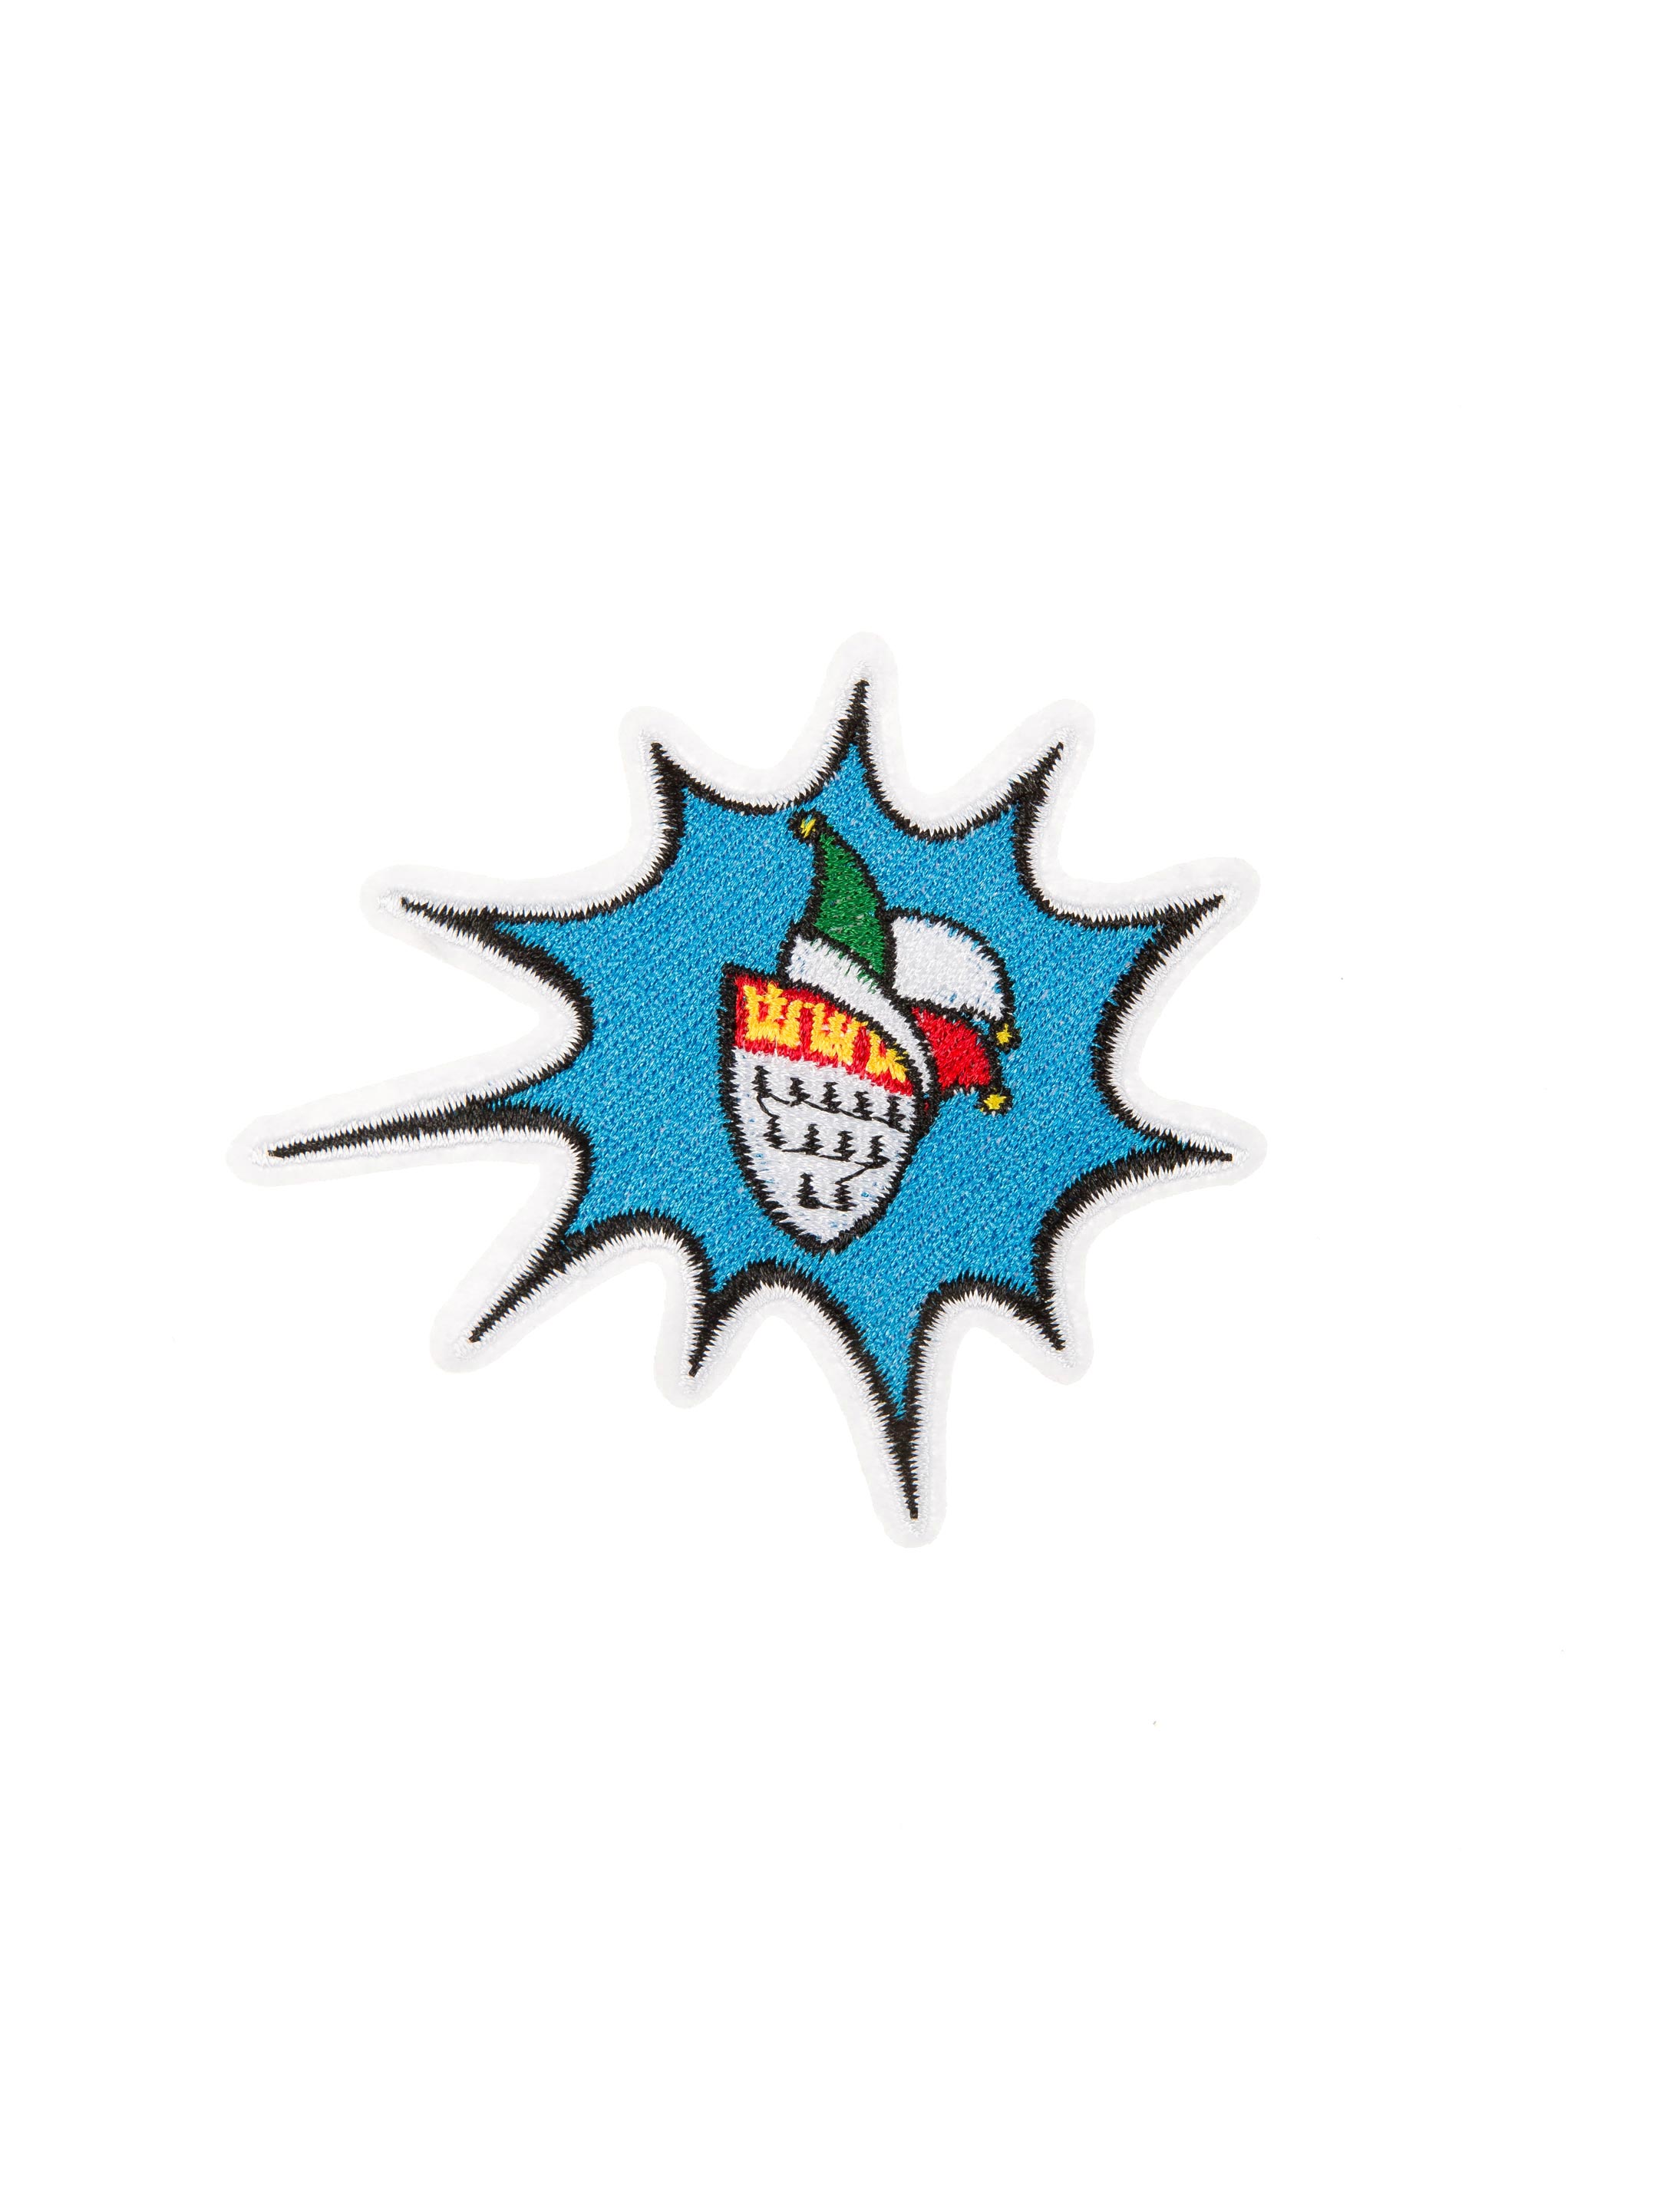 Aufnäher/Bügelbild Motto 'Festkomitee Logo' 2018/2019